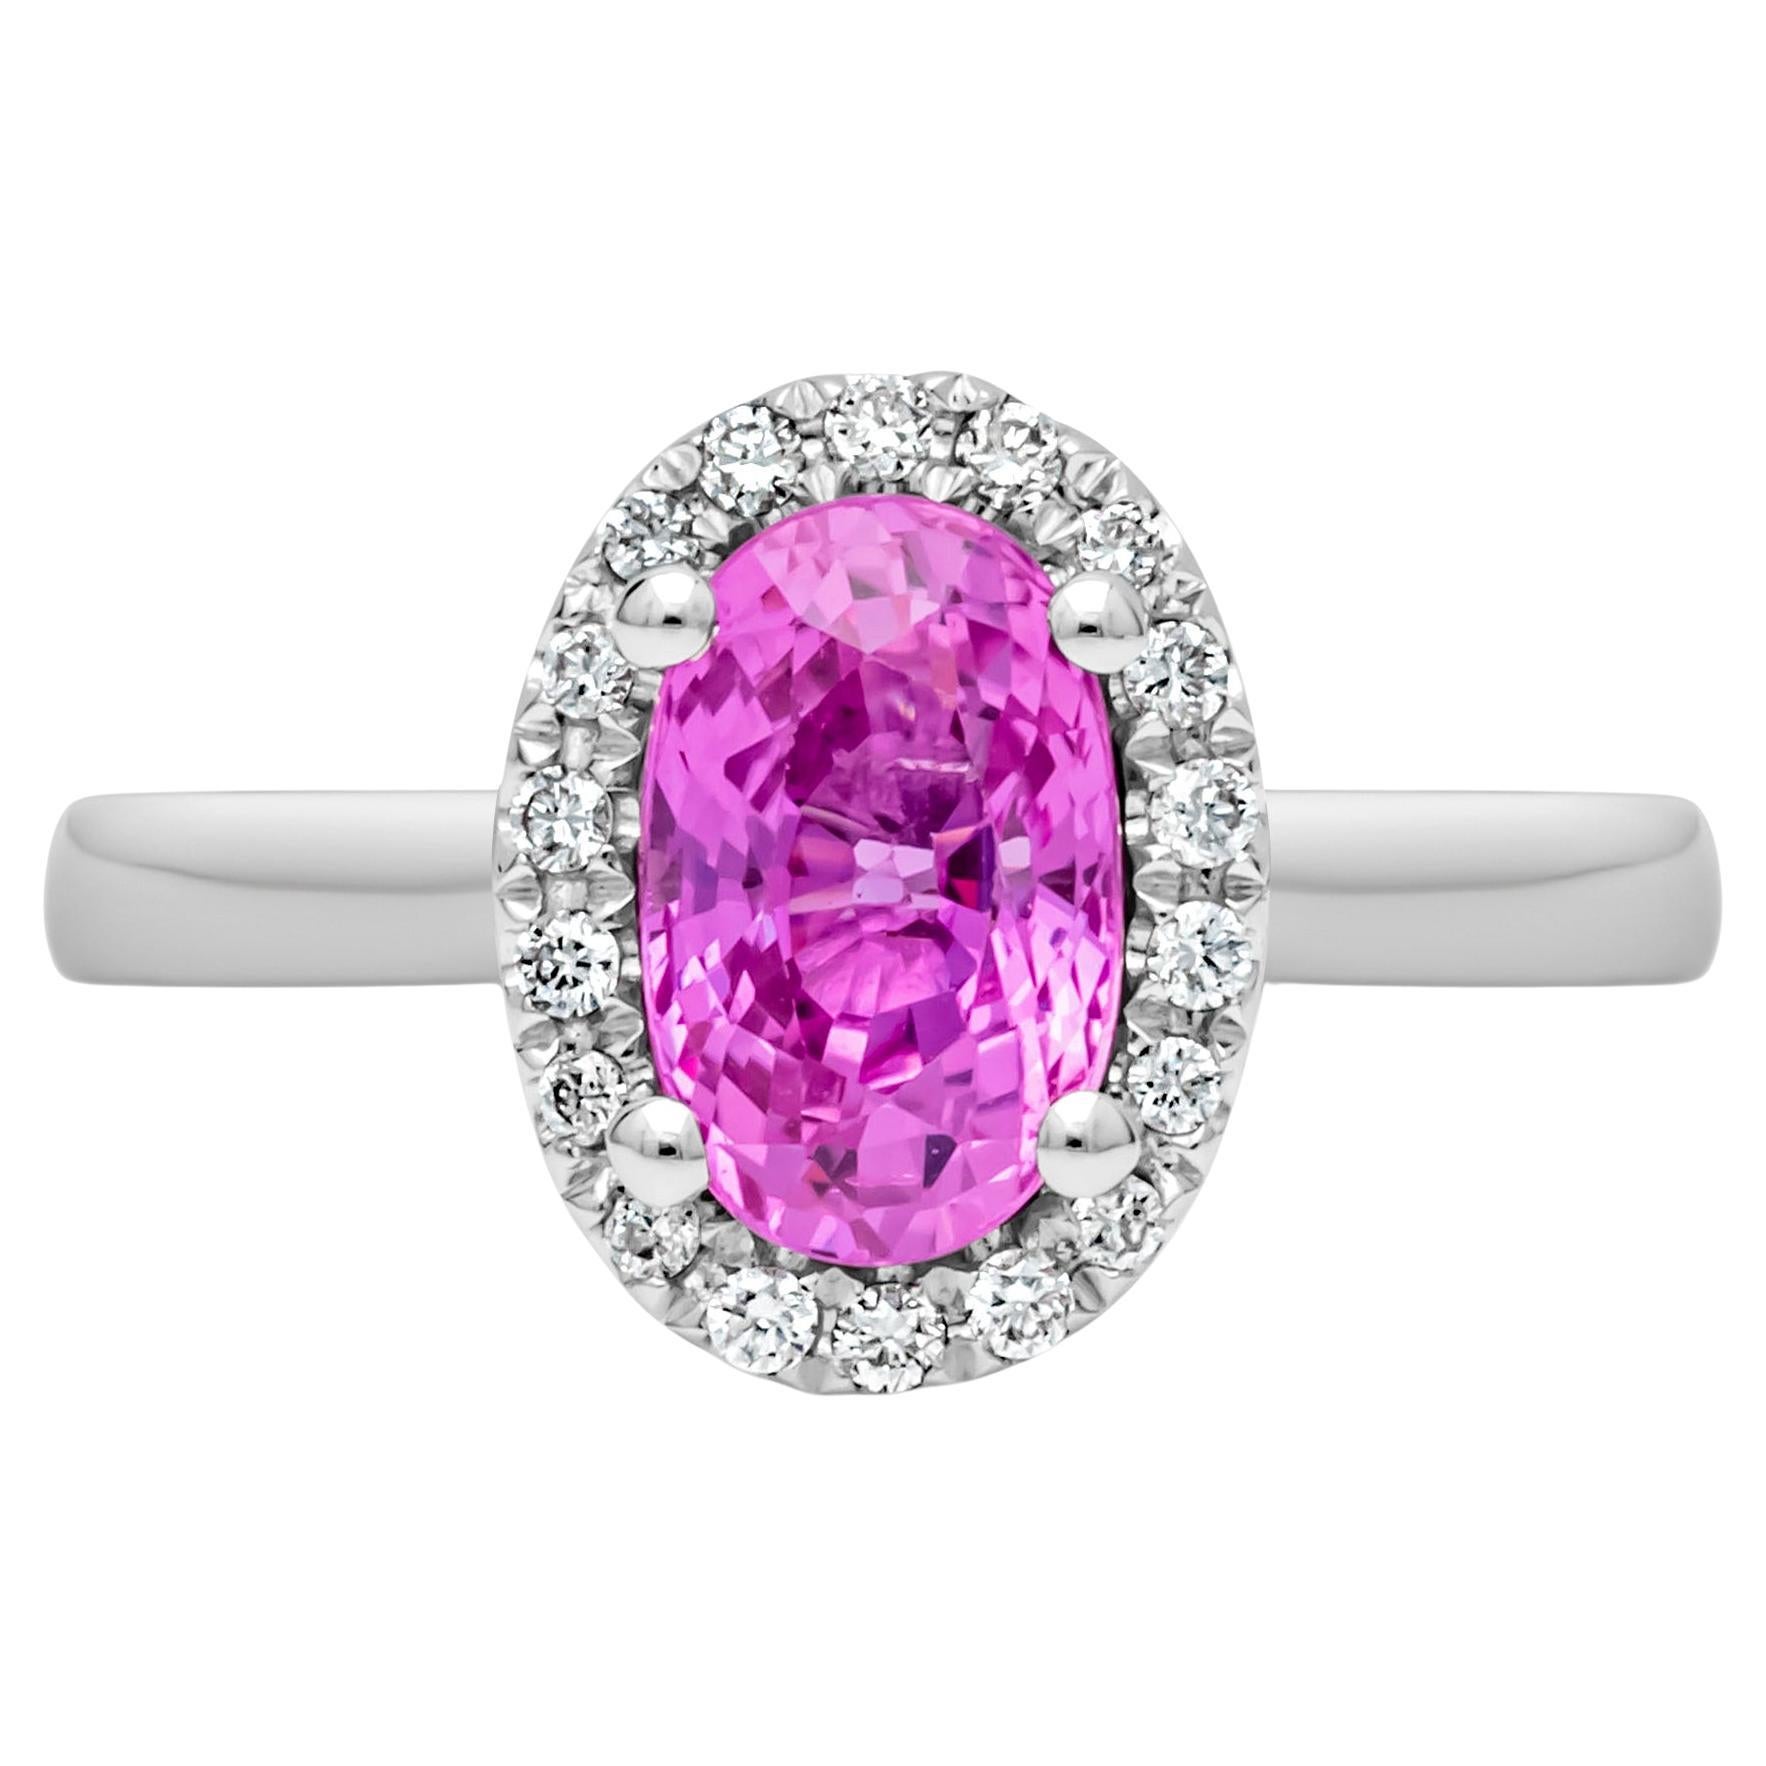 Roman Malakov 1.95 Carats Oval Cut Pink Sapphire & Diamond Halo Engagement Ring